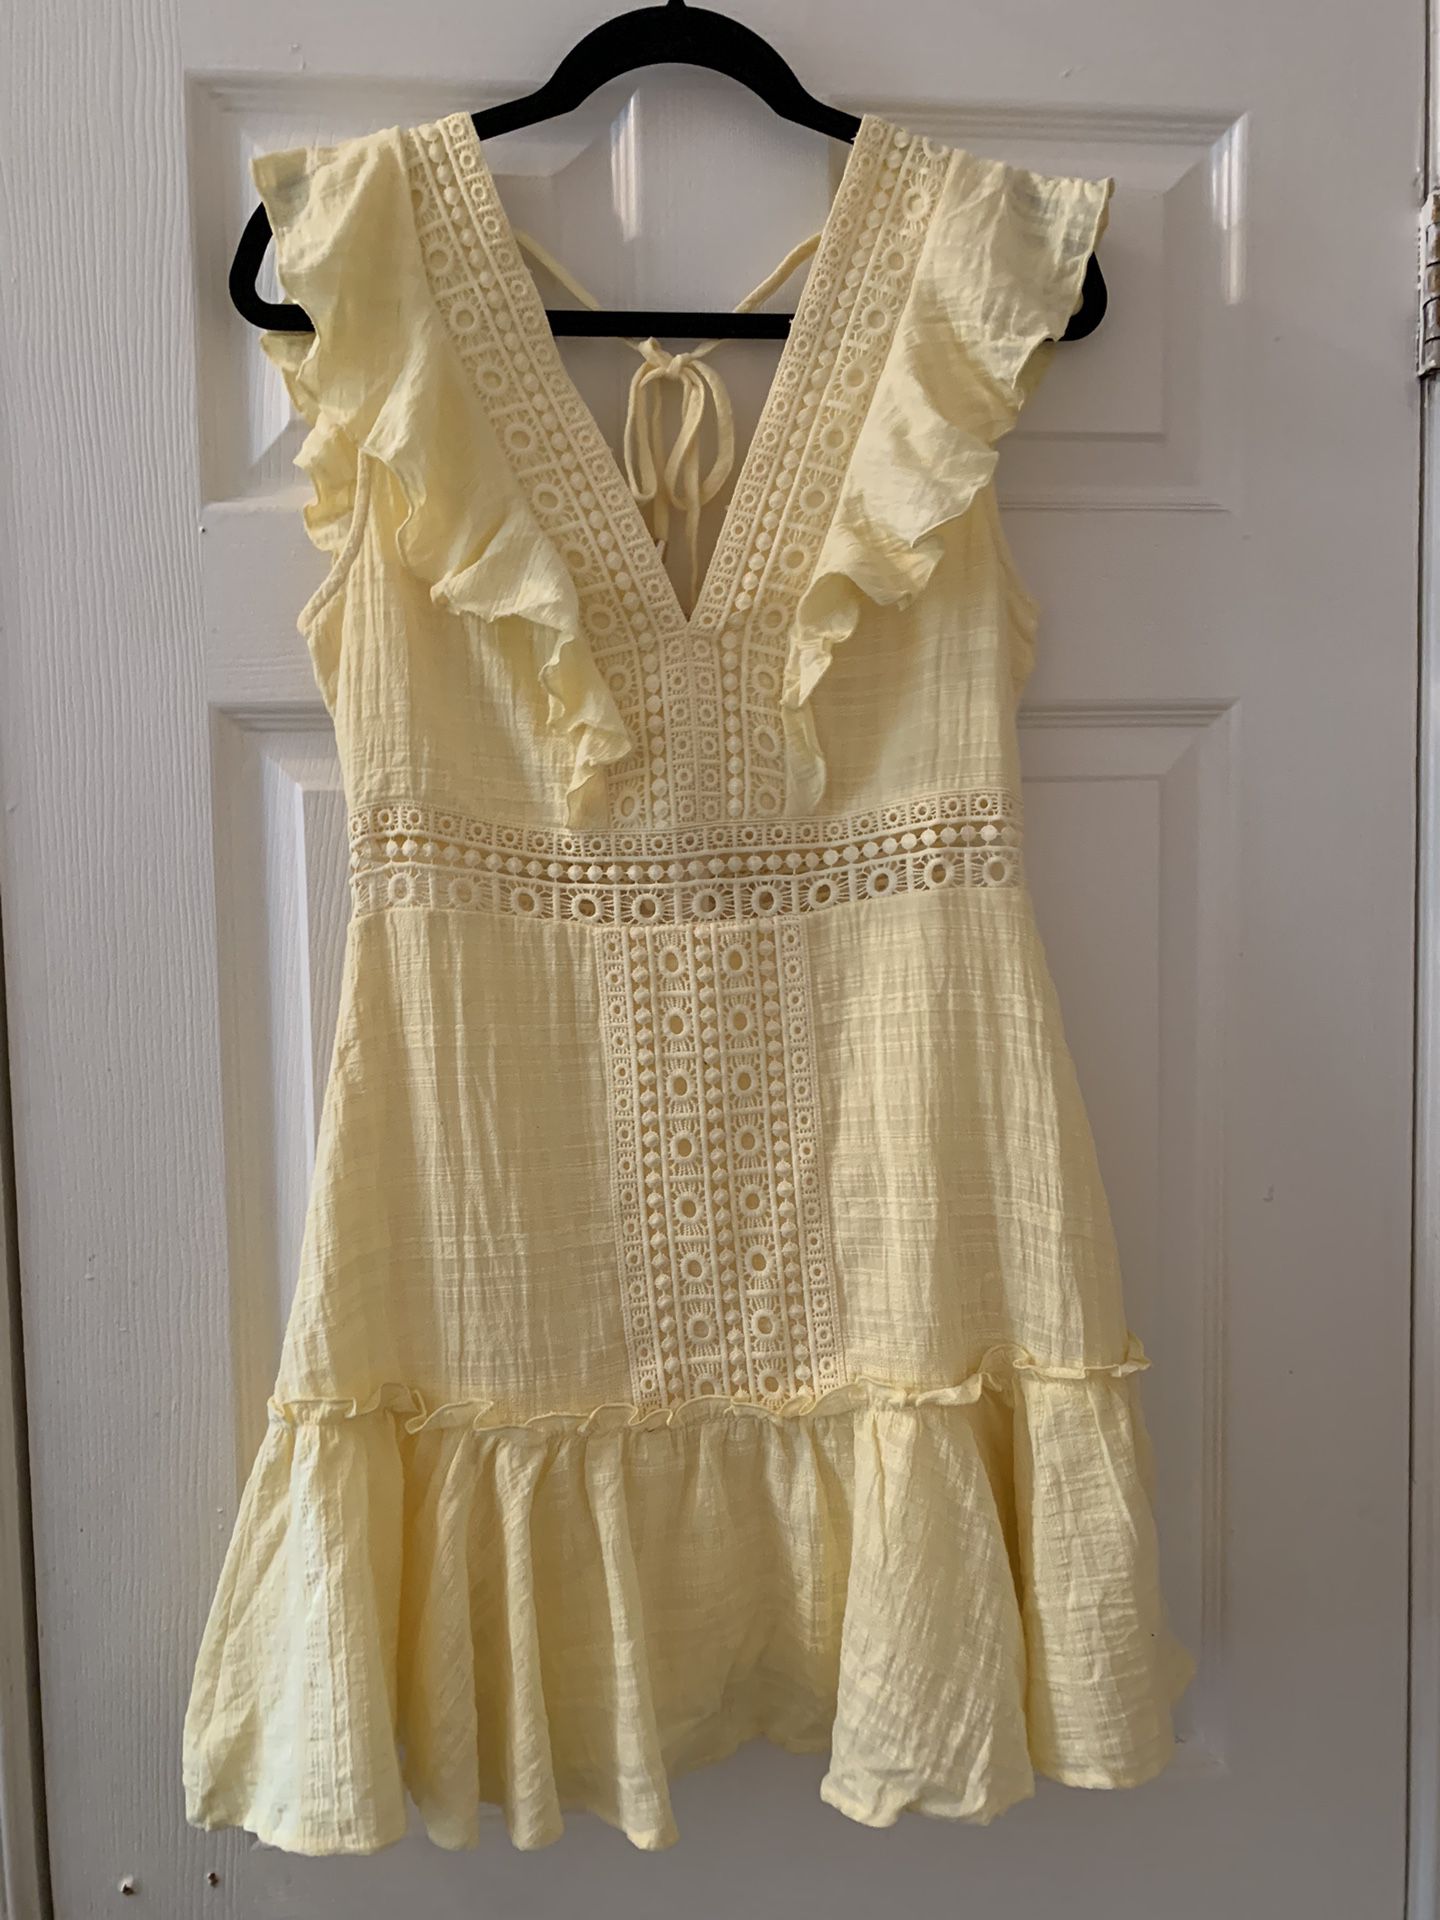 Audrey parks-francesca’s Brand yellow Summer Dress. 